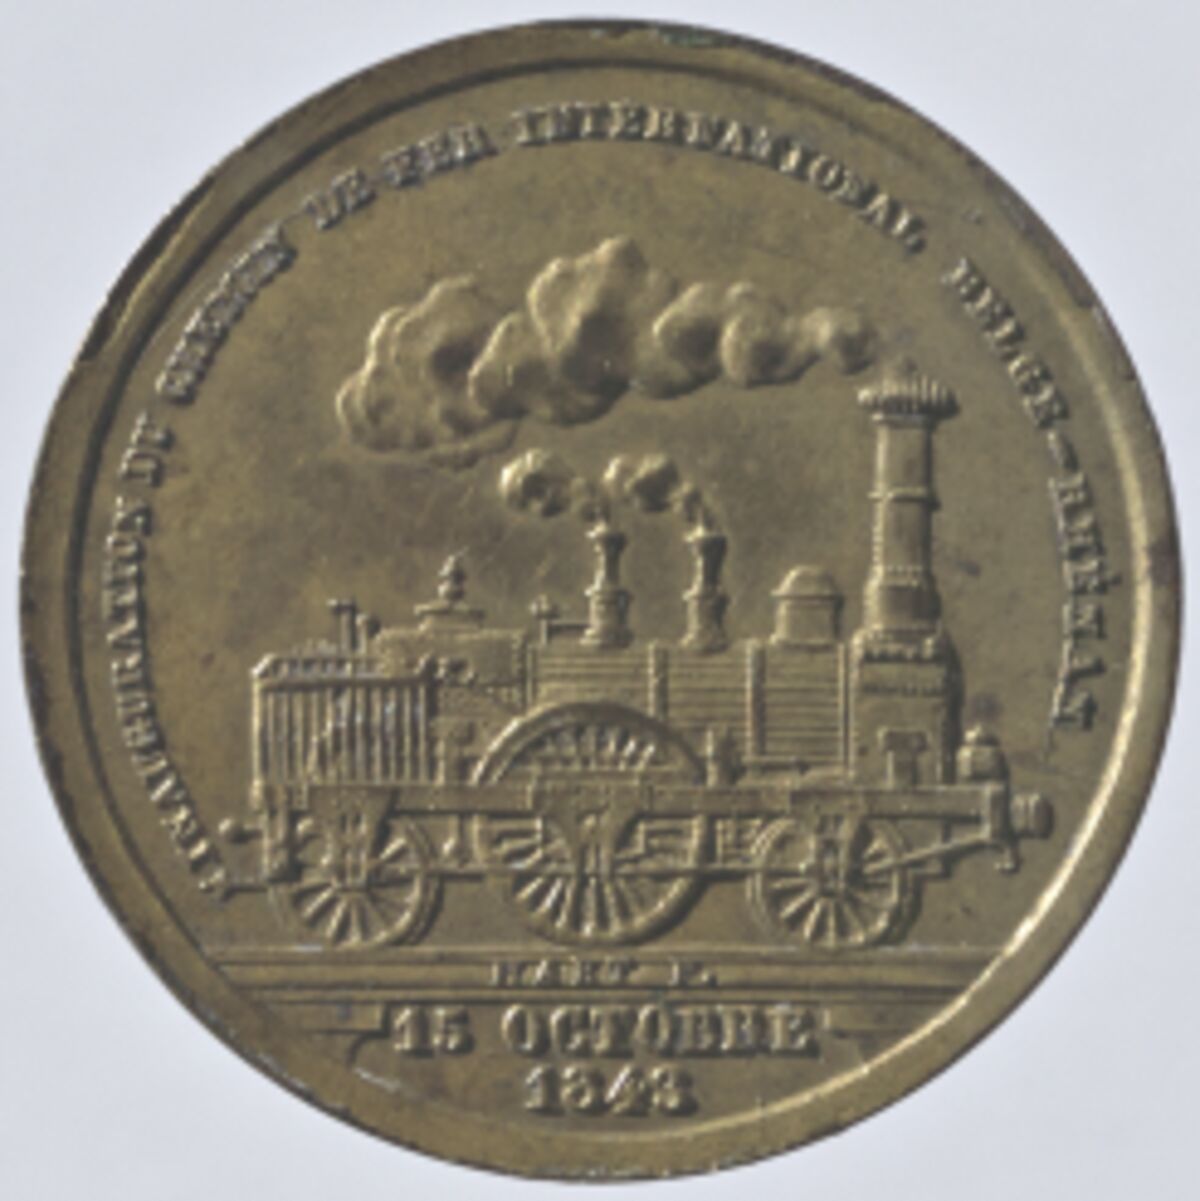 GFD 2/290: Gedenkmünze zur Eröffnung der Eisenbahnstrecke Belgien-Rheinland am 15. Oktober 1843